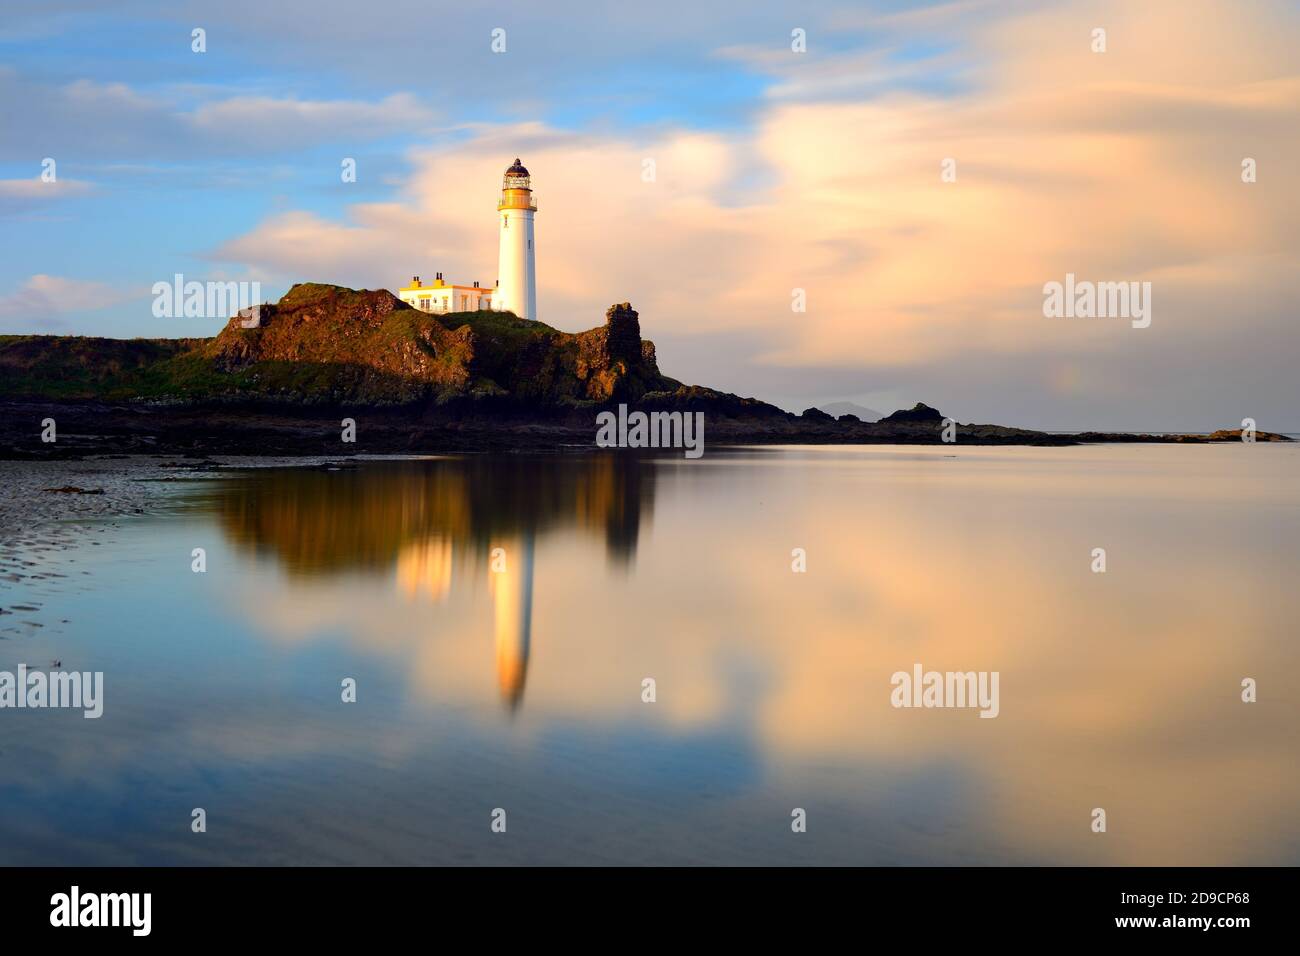 Turnberry Lighthouse at sunrise, Ayrshire Stock Photo